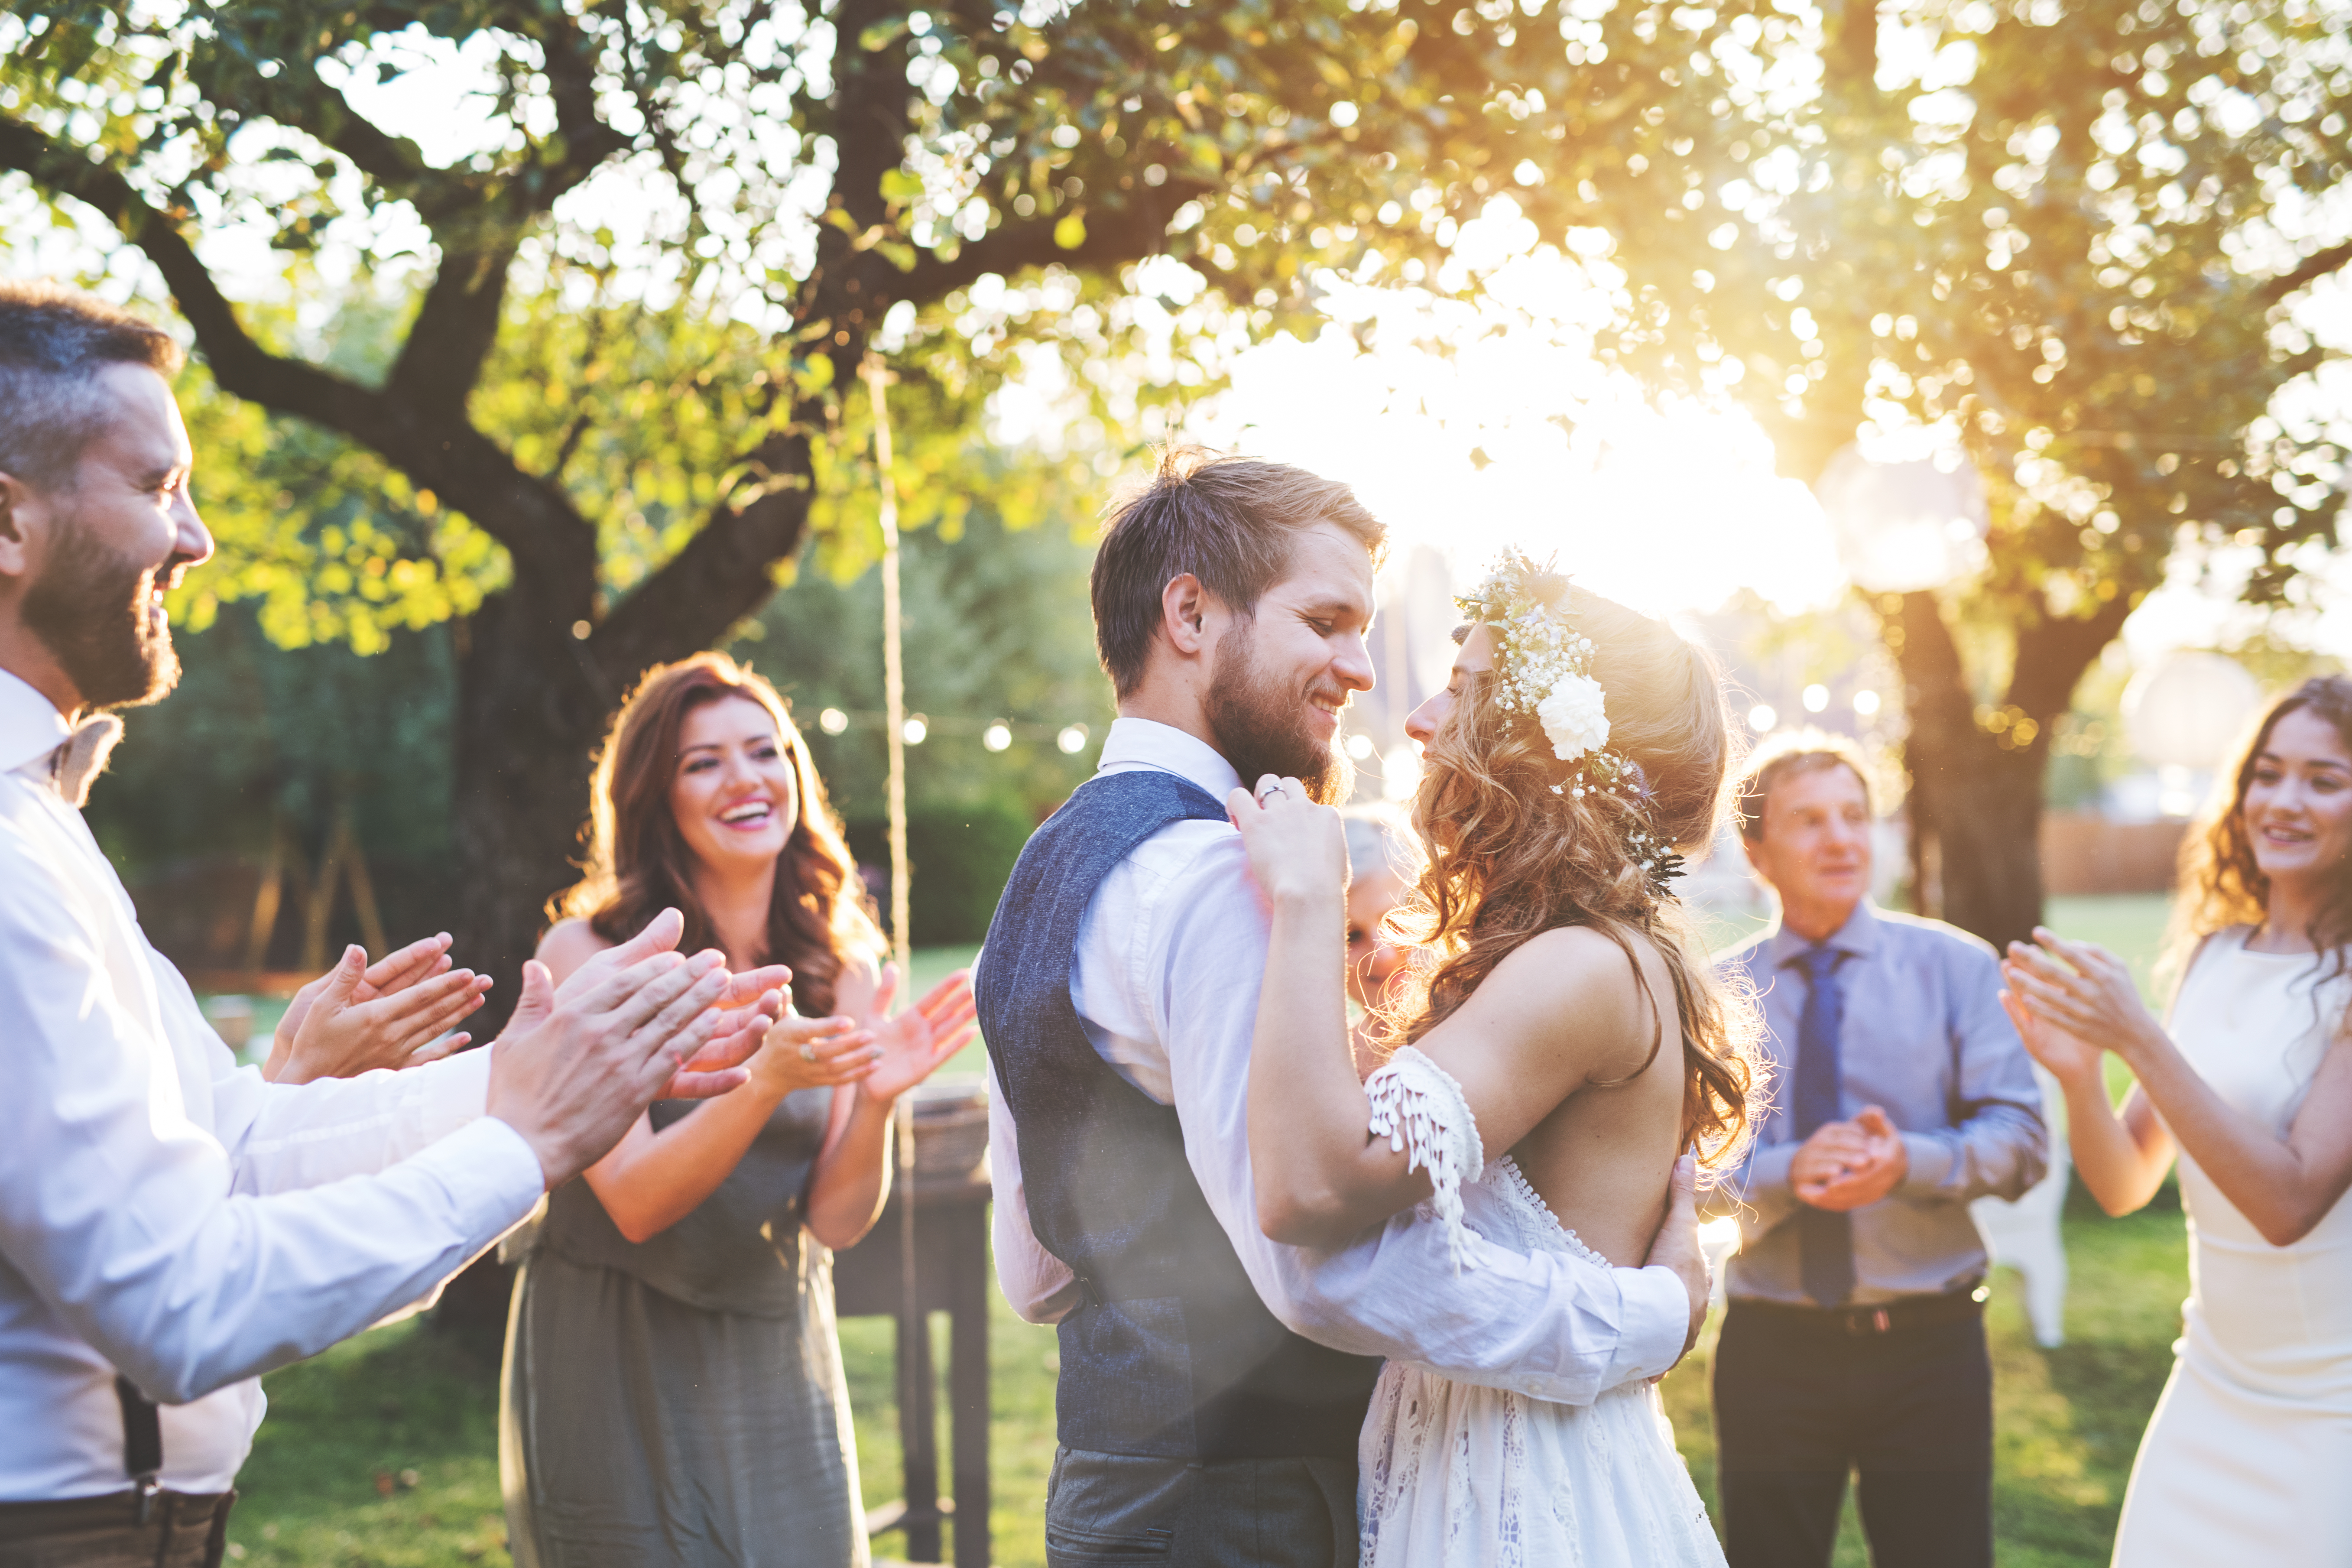 Un couple heureux entouré de leurs proches. | Source : Shutterstock